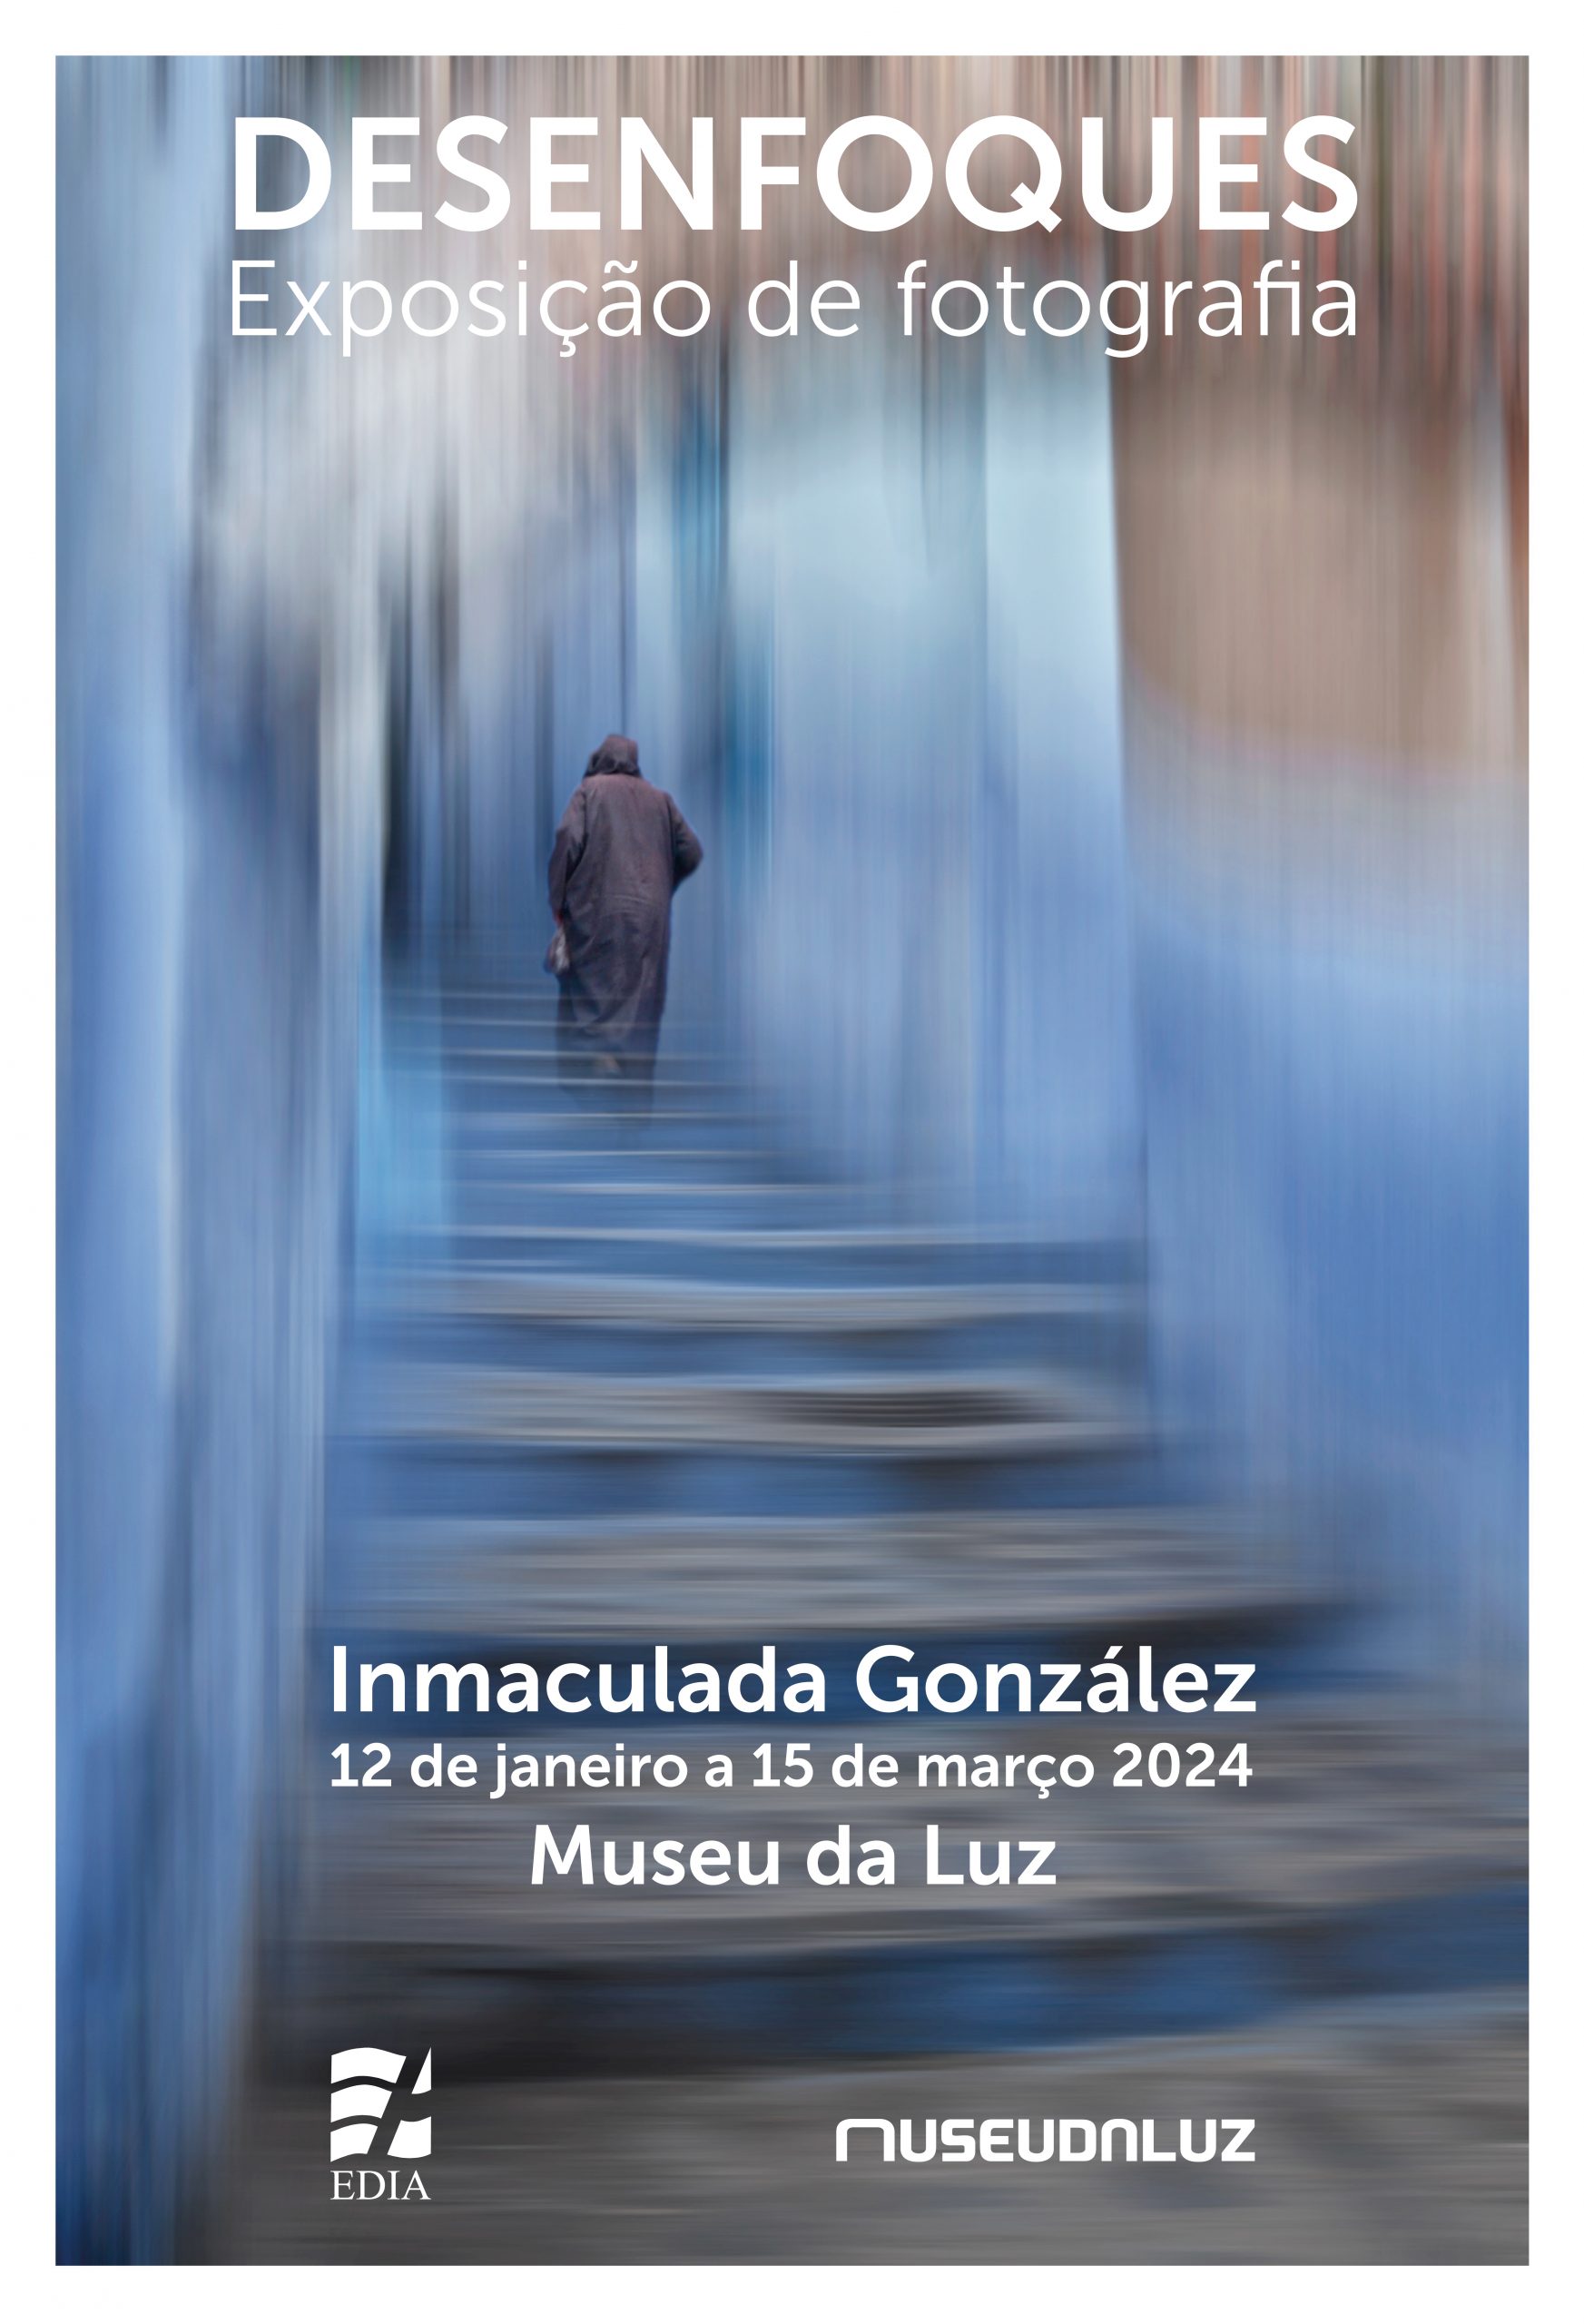 Museu da Luz – Exposição de Fotografia “DESENFOQUES” de Inmaculada González